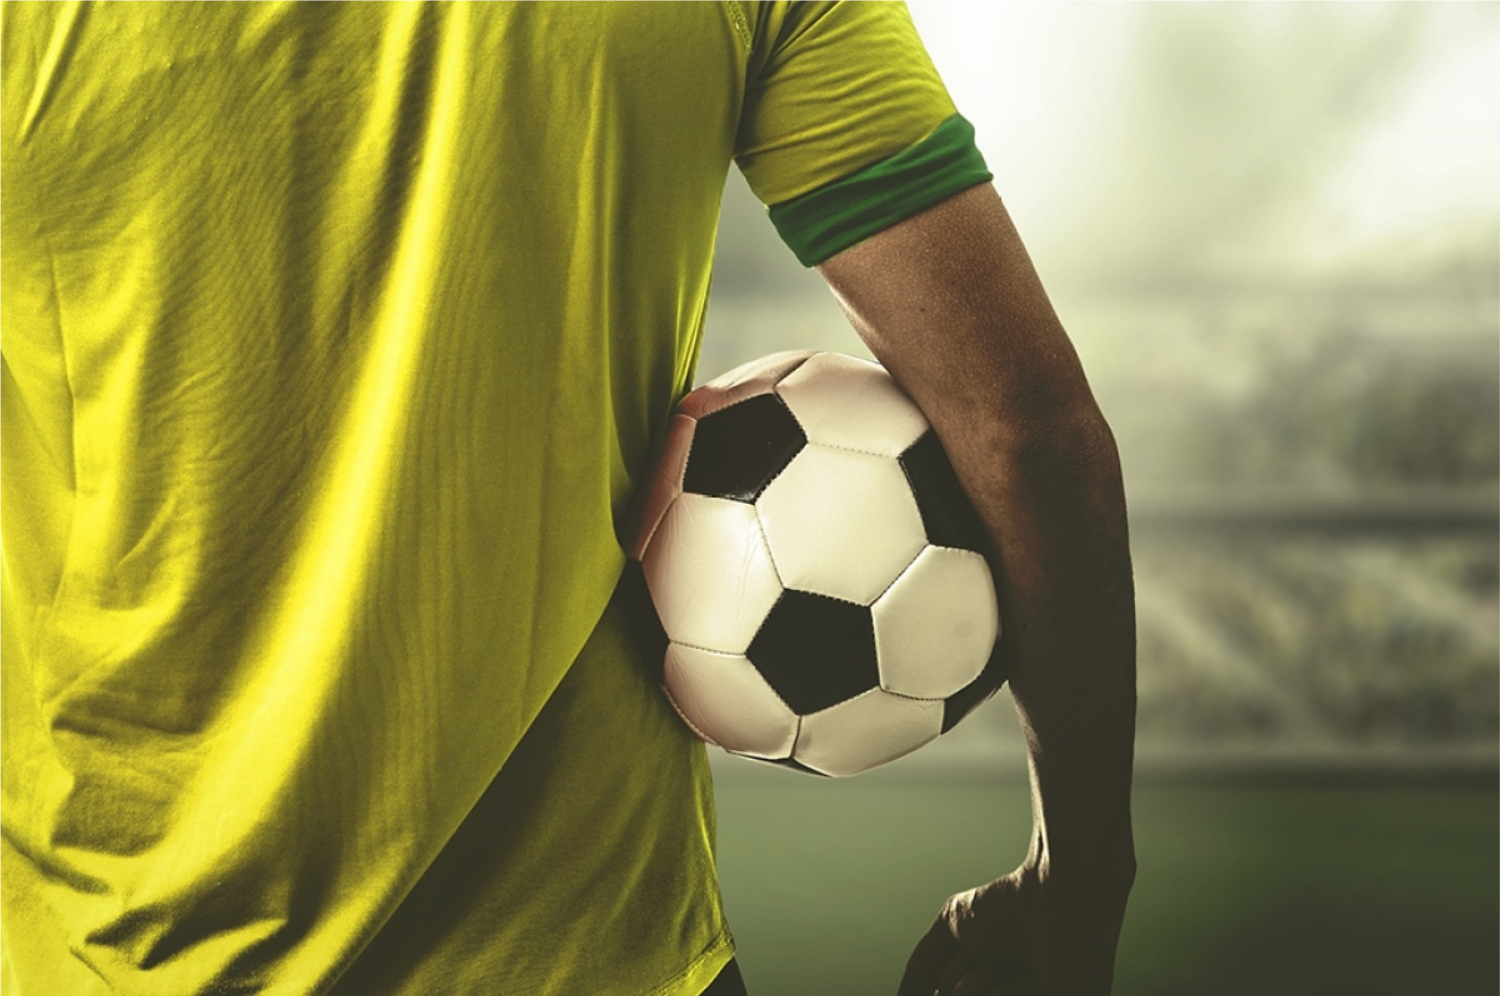 Assistir Futebol Ao vivo: Dicas de como assistir futebol online